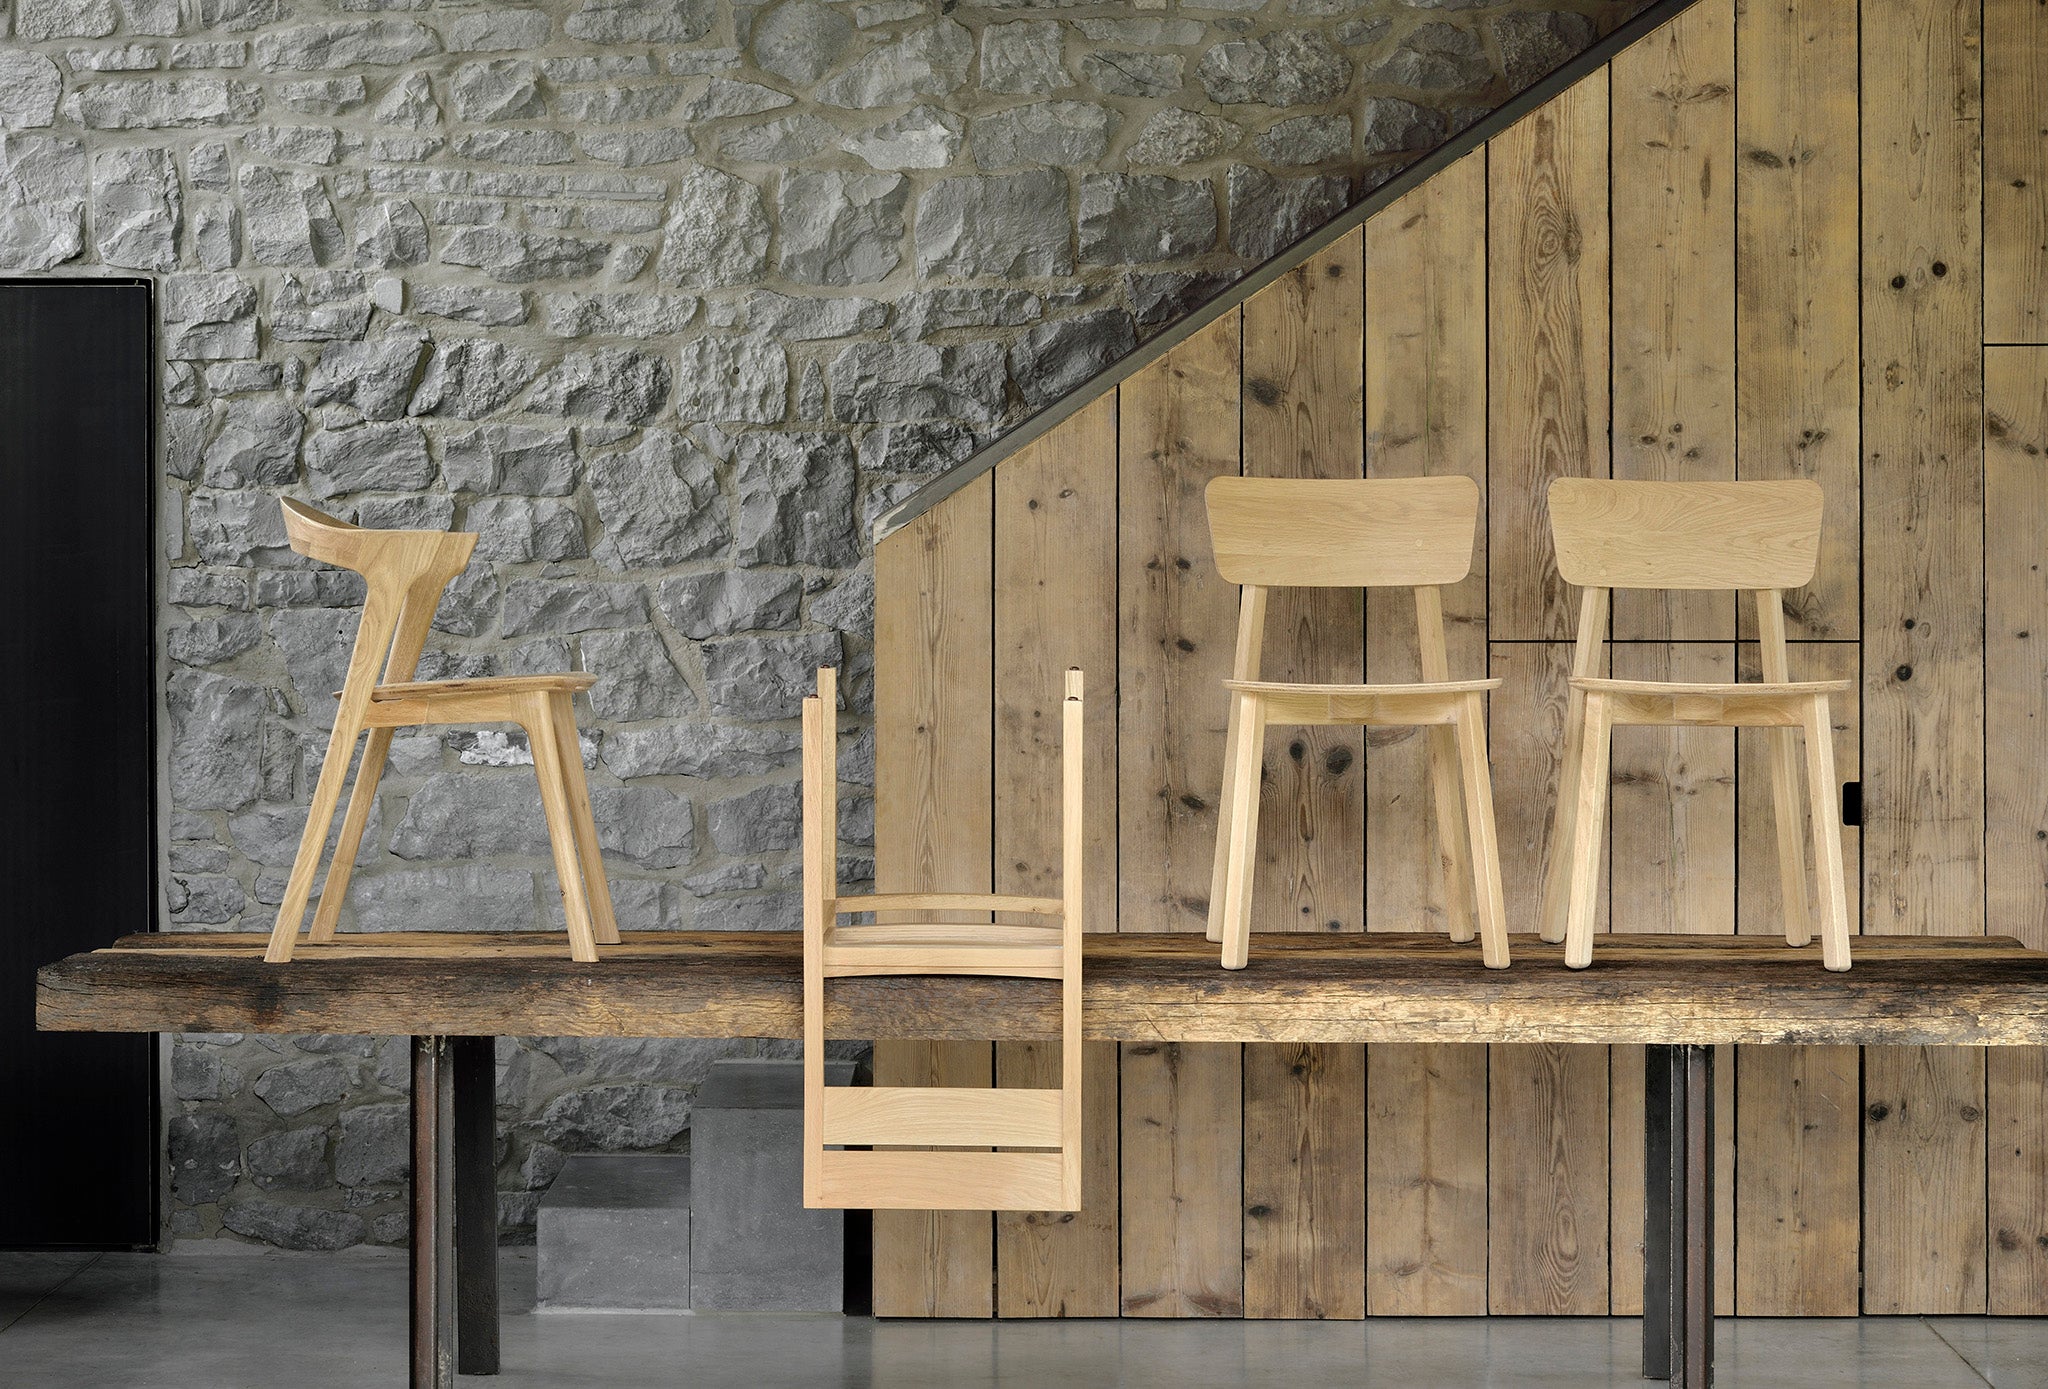 比利時原裝進口實木傢俬 - 座椅系列 - Bok系列橡木餐椅